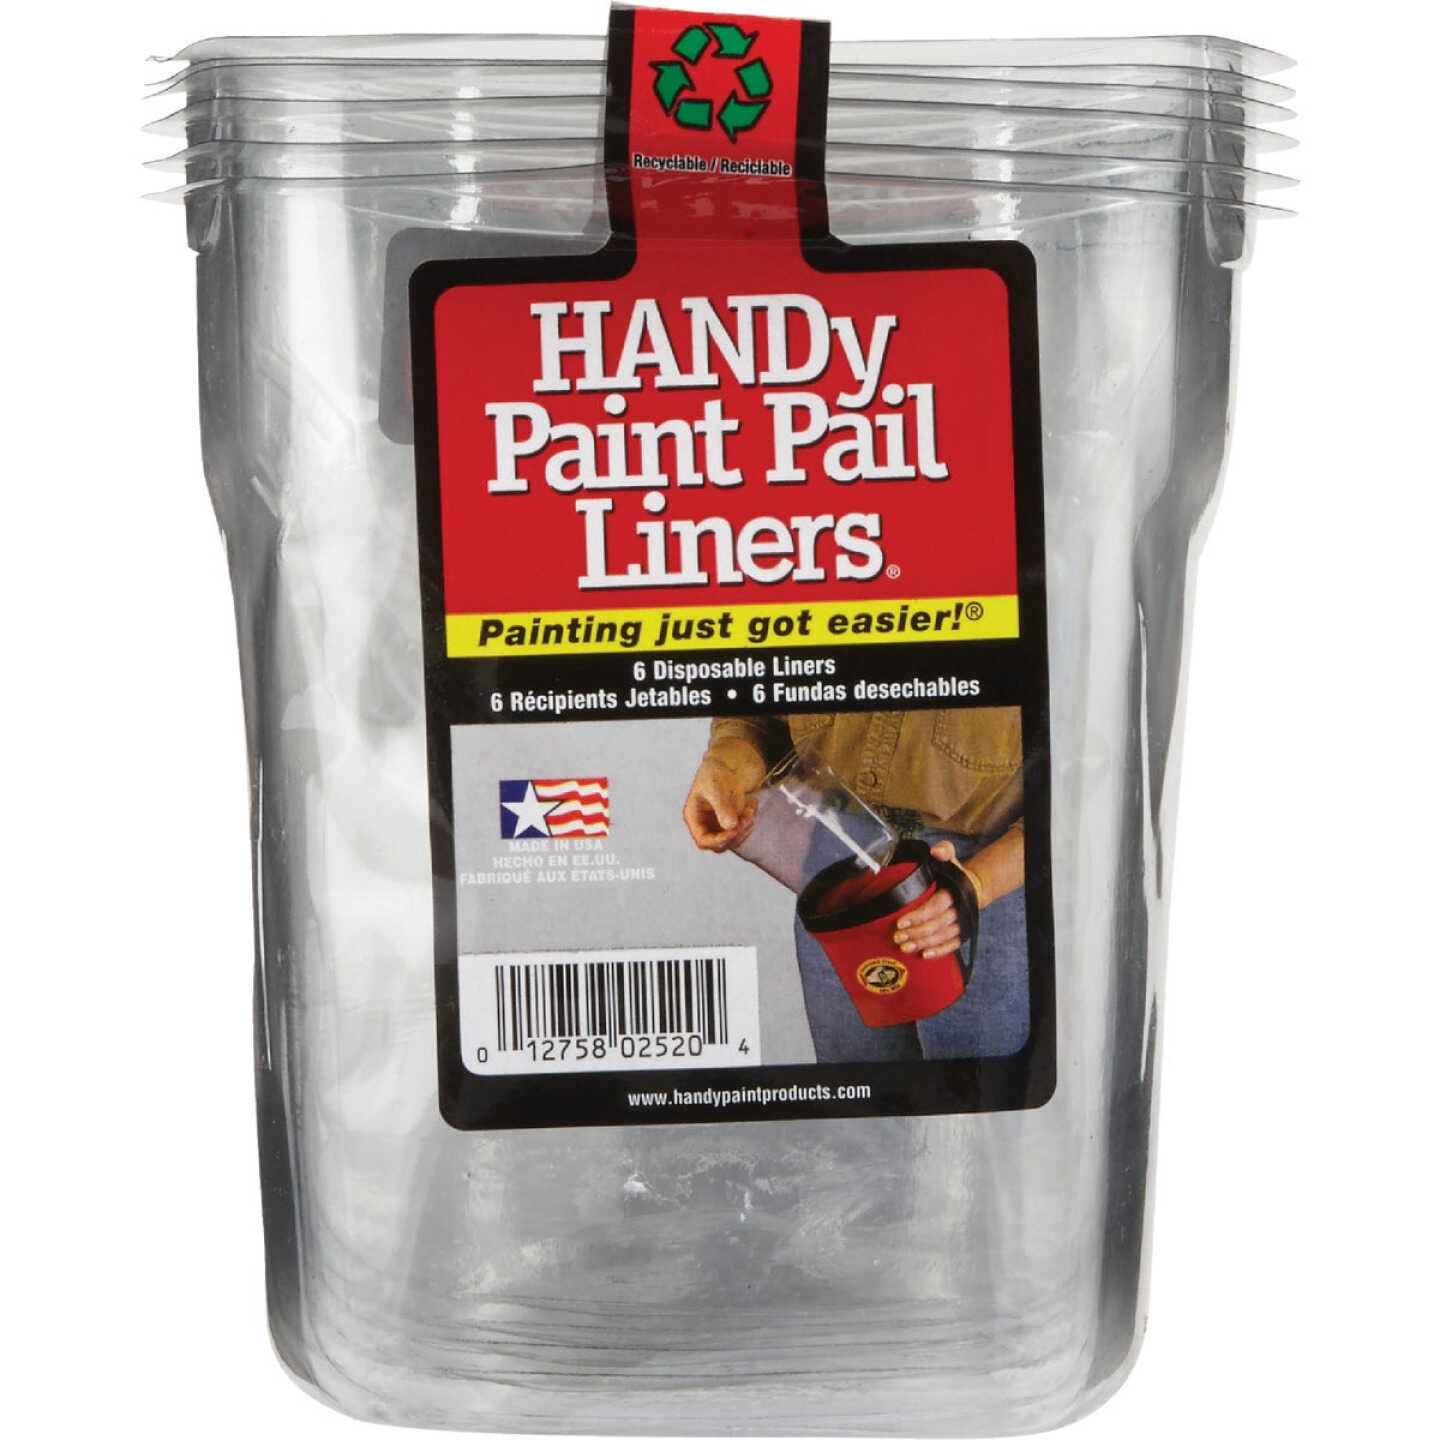 HANDy 1 Qt. Clear Paint Pail Liner (6-Pack) Image 2